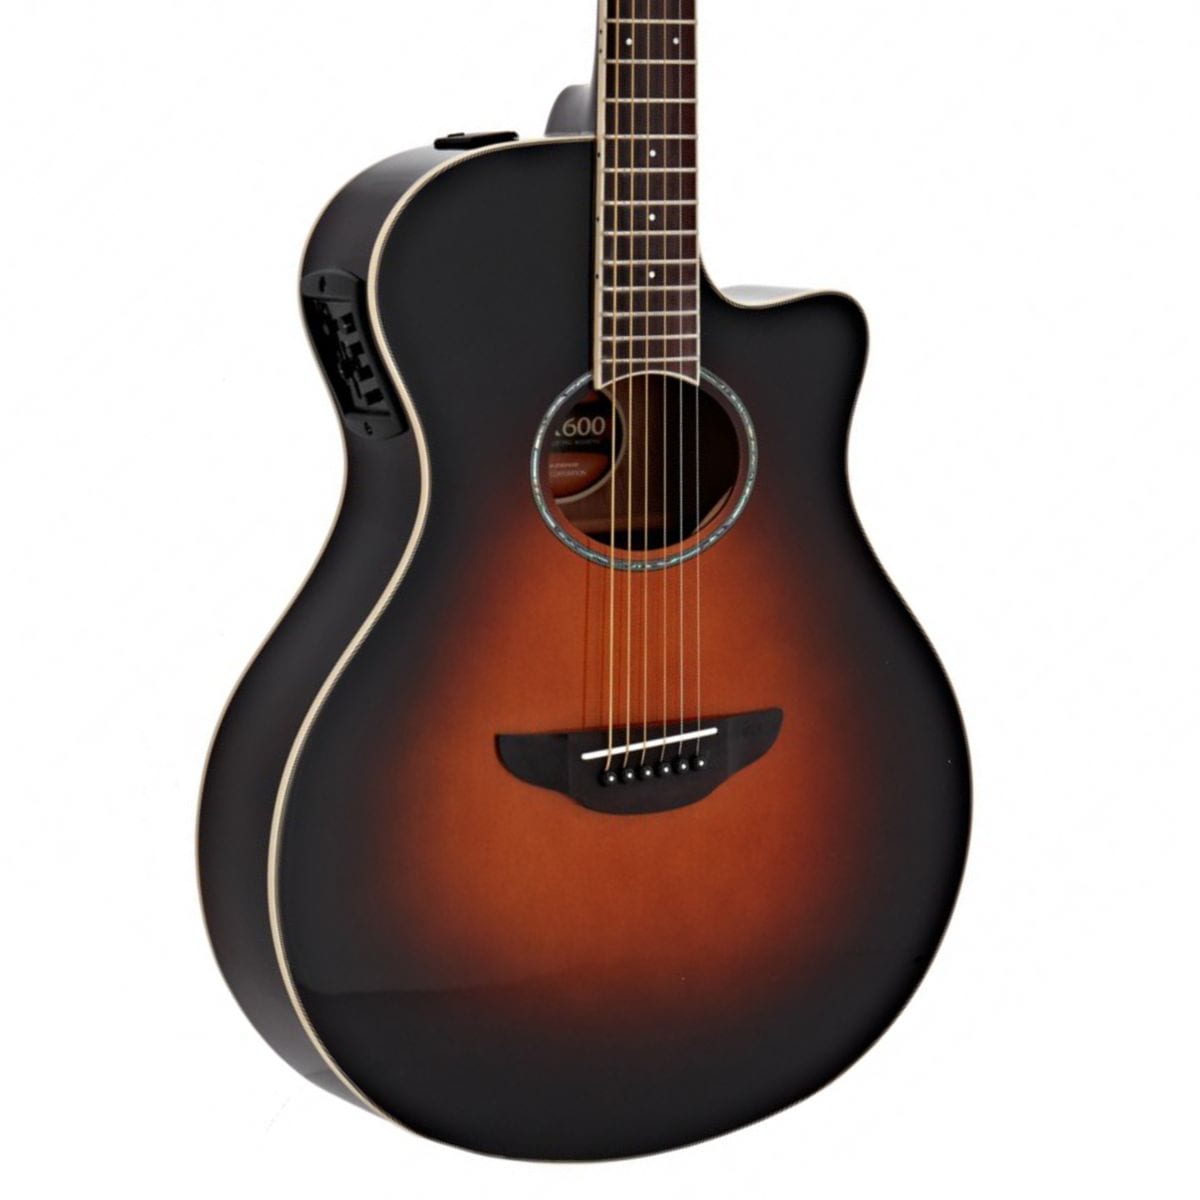 Yamaha - El. Acoustic Guitar Apx600 Guitare Electro-acoustique